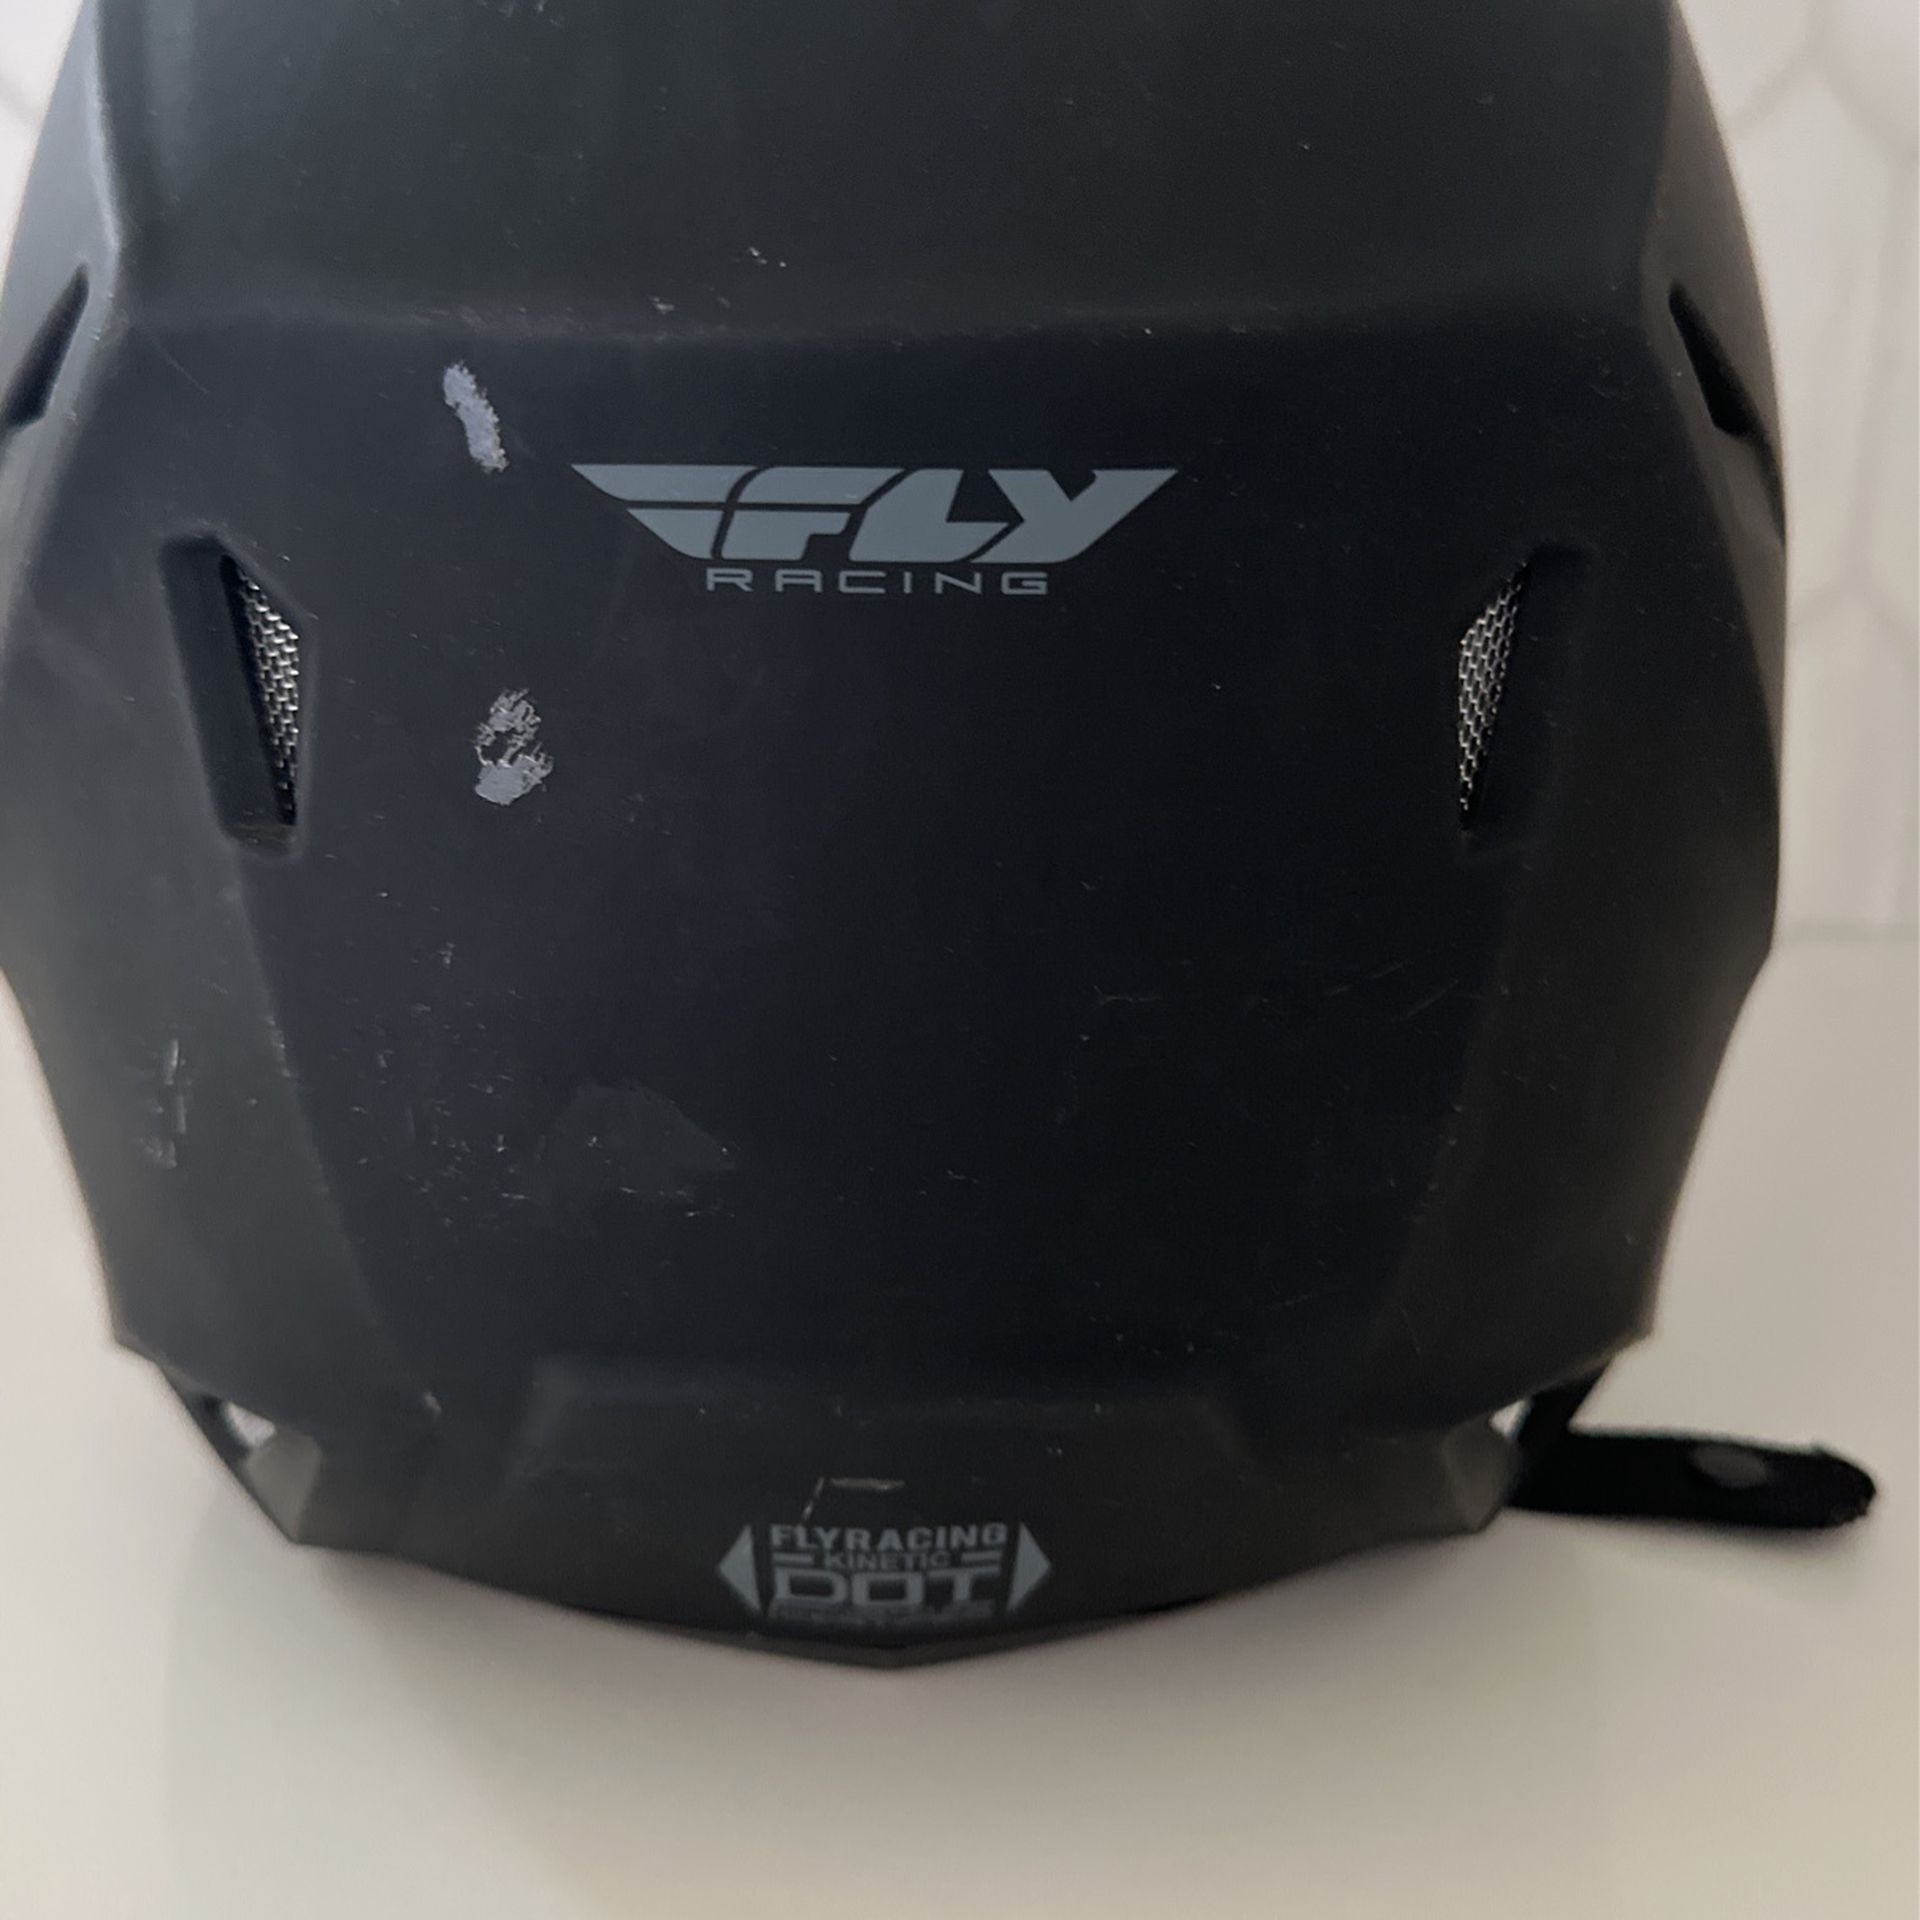 Fly Racing helmet 